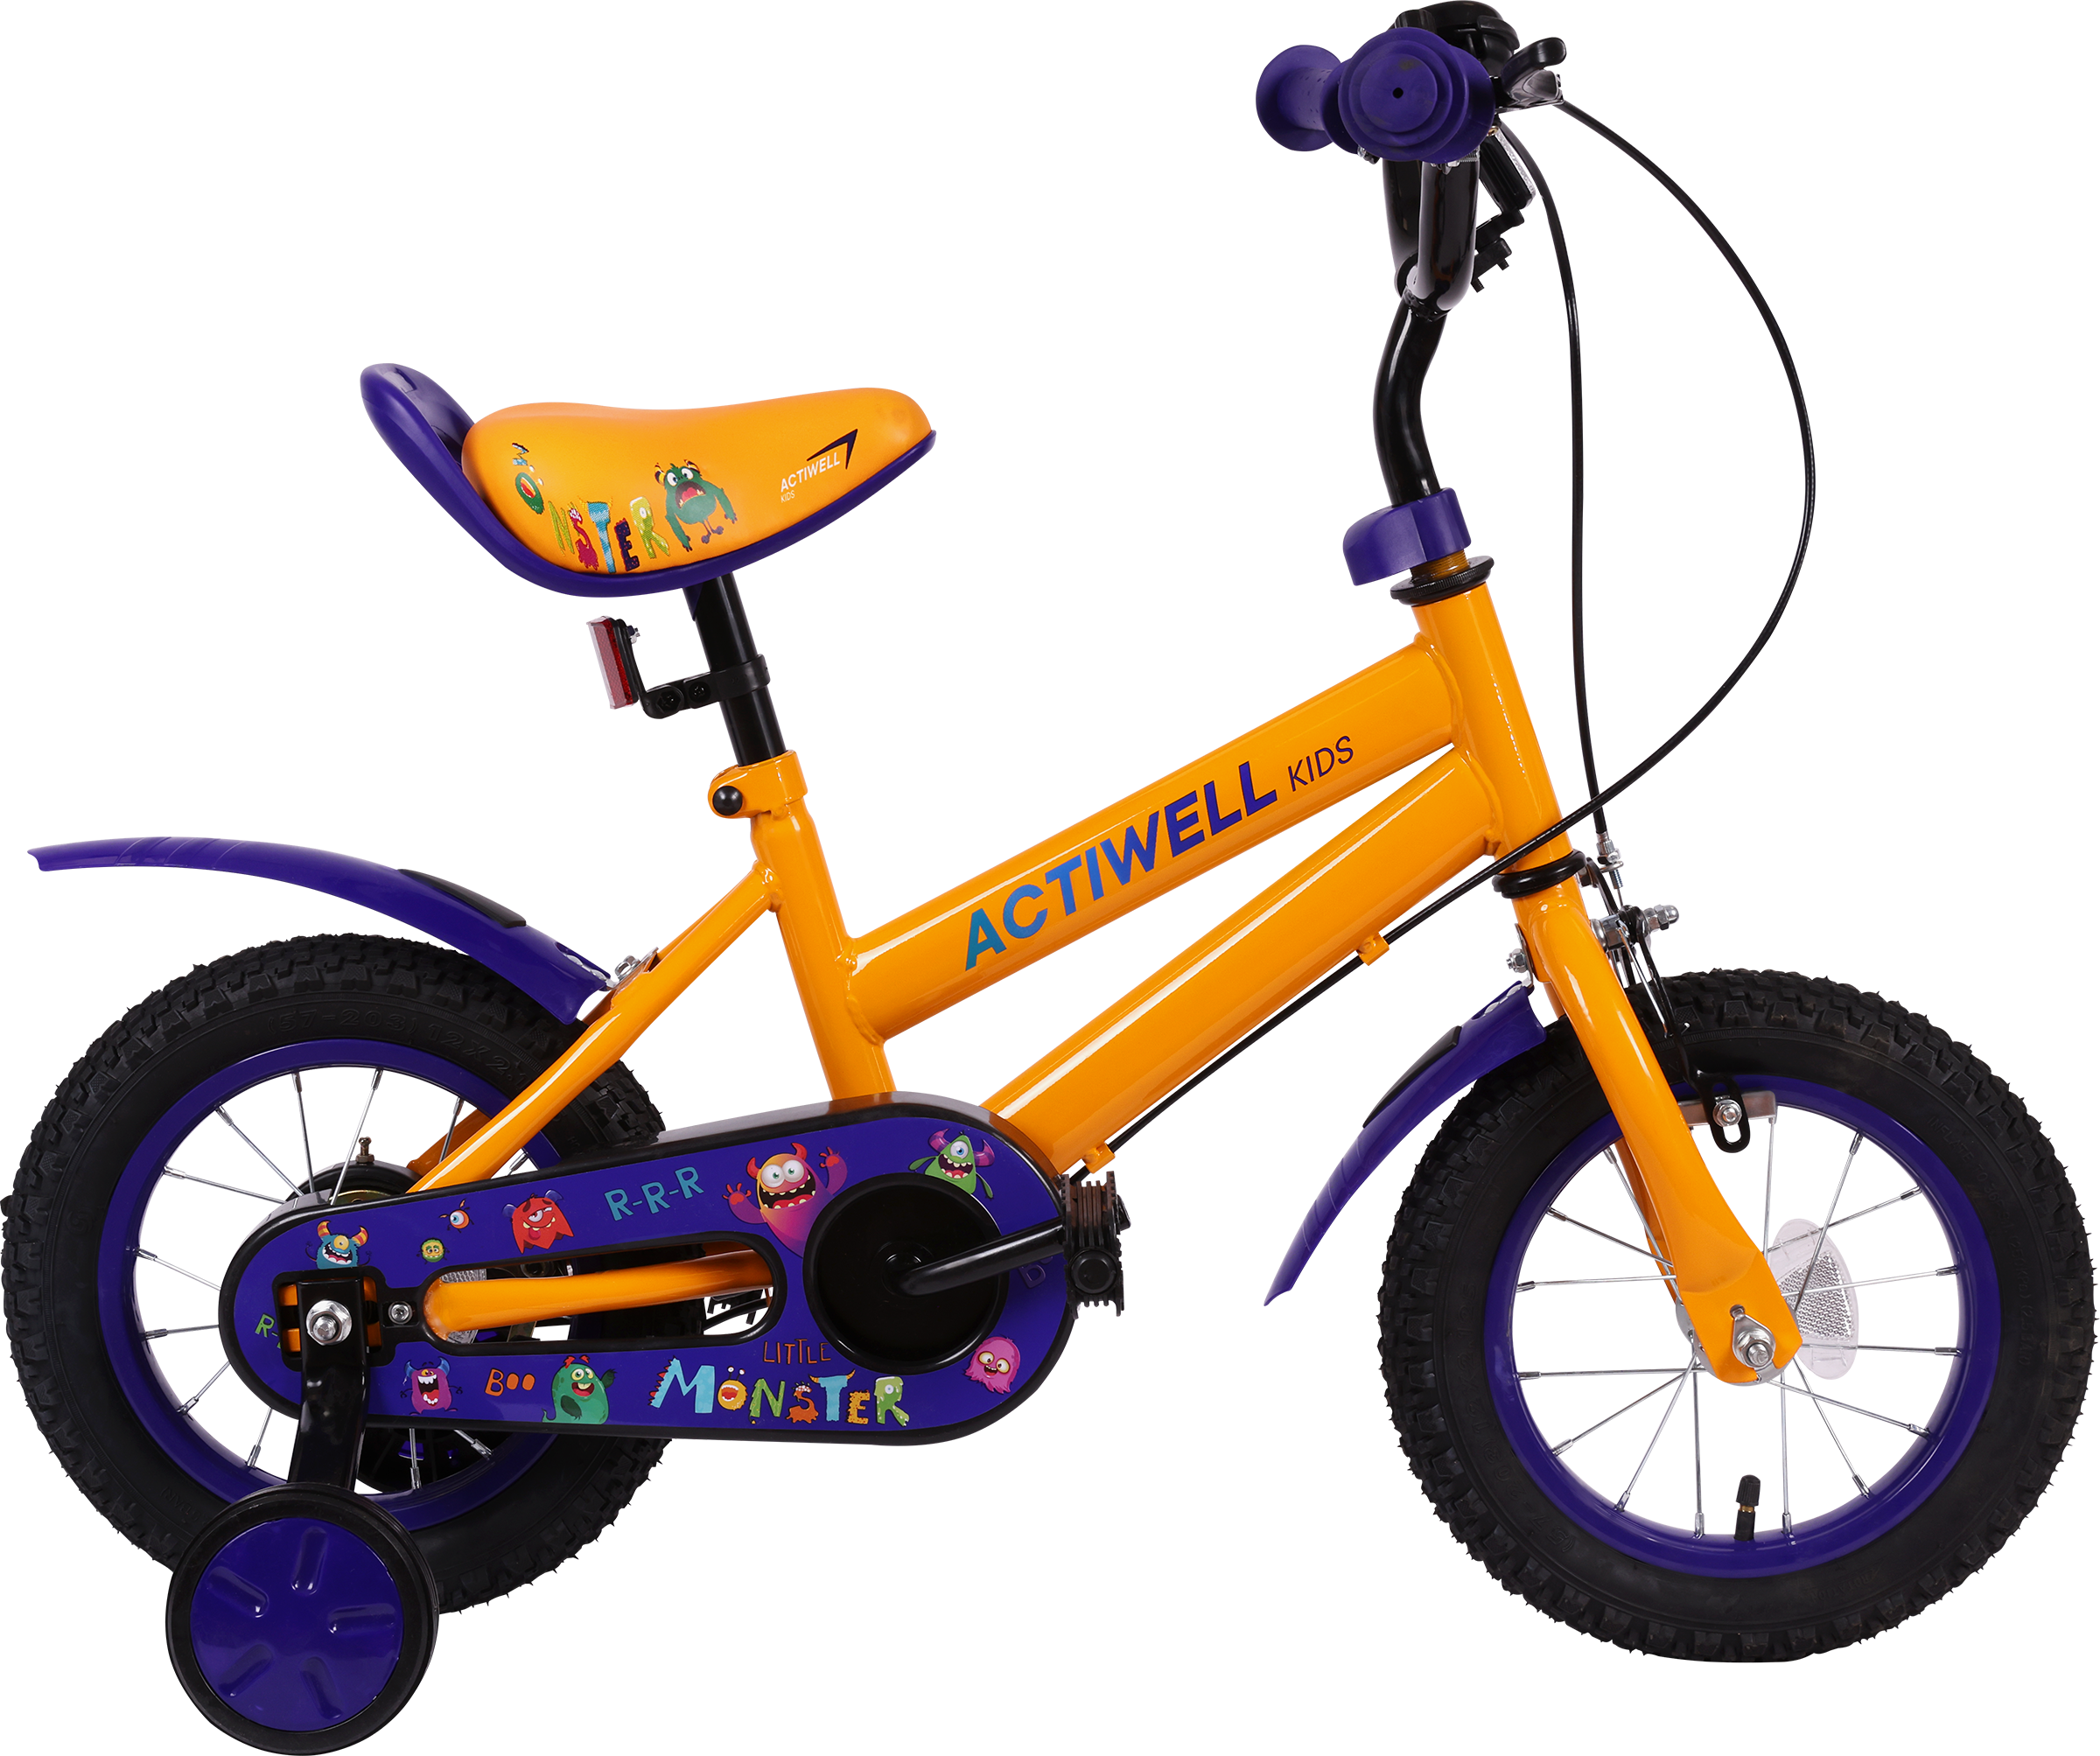 Велосипед городской детский Actiwell двухколесный 12